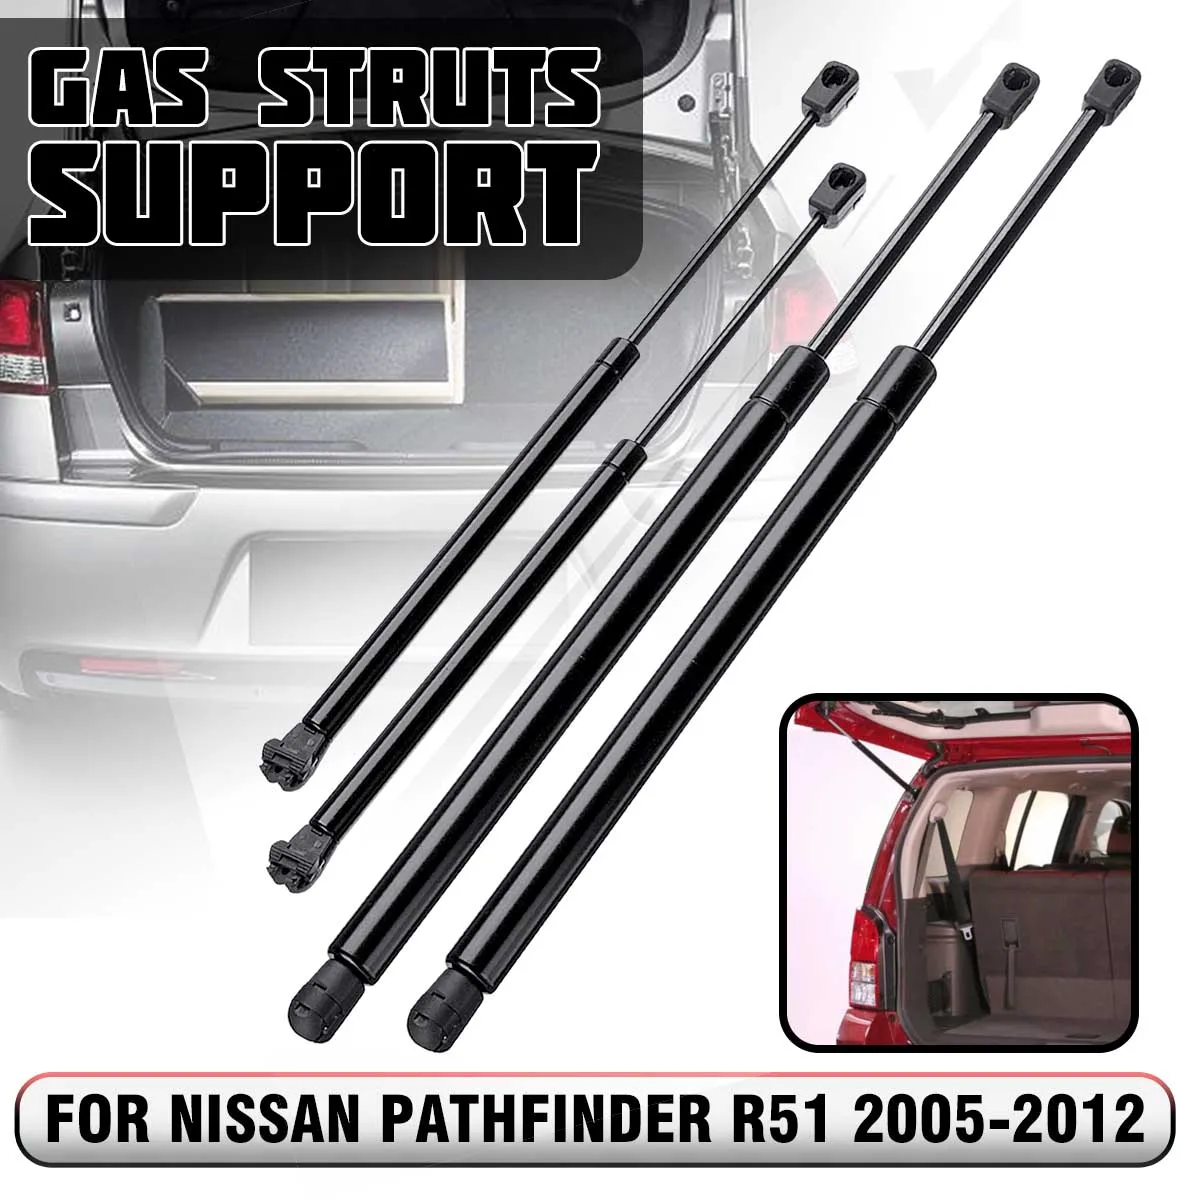 Rear Window Ascensore Supporta Strut Ammortizzatori Fit Nissan Pathfinder R51 2005-2012 L&U 4 Pezzi portellone Molle a Gas